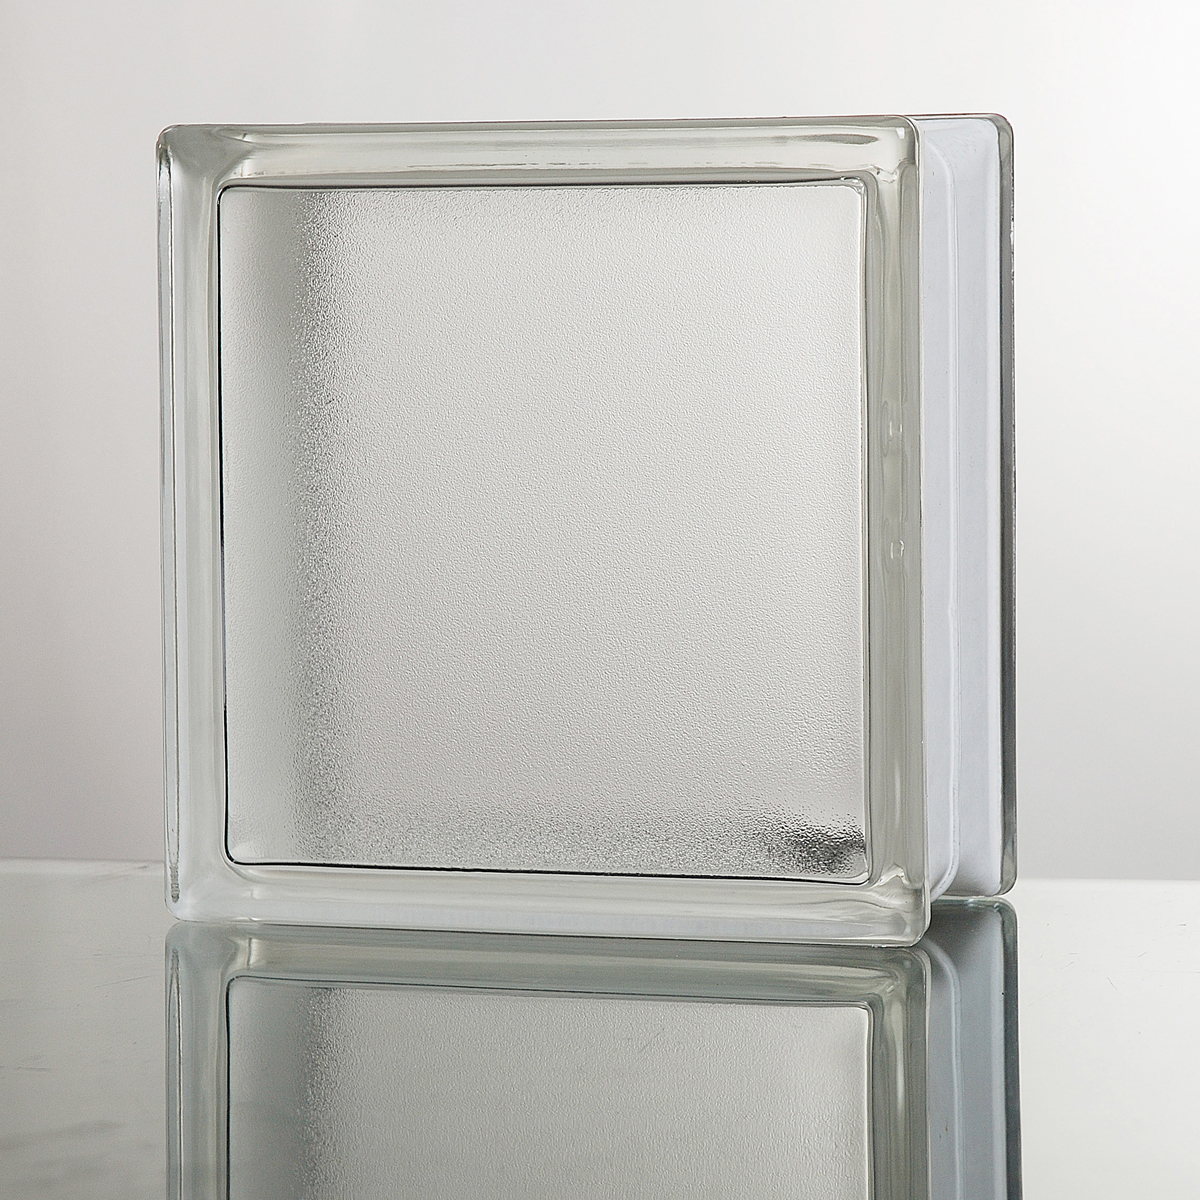 倉 ガラスブロック：期間限定セール マーケティング ガラスブロック 送料無料 6個セット クリア色タンジェリンスキンA 高品質 80mm厚